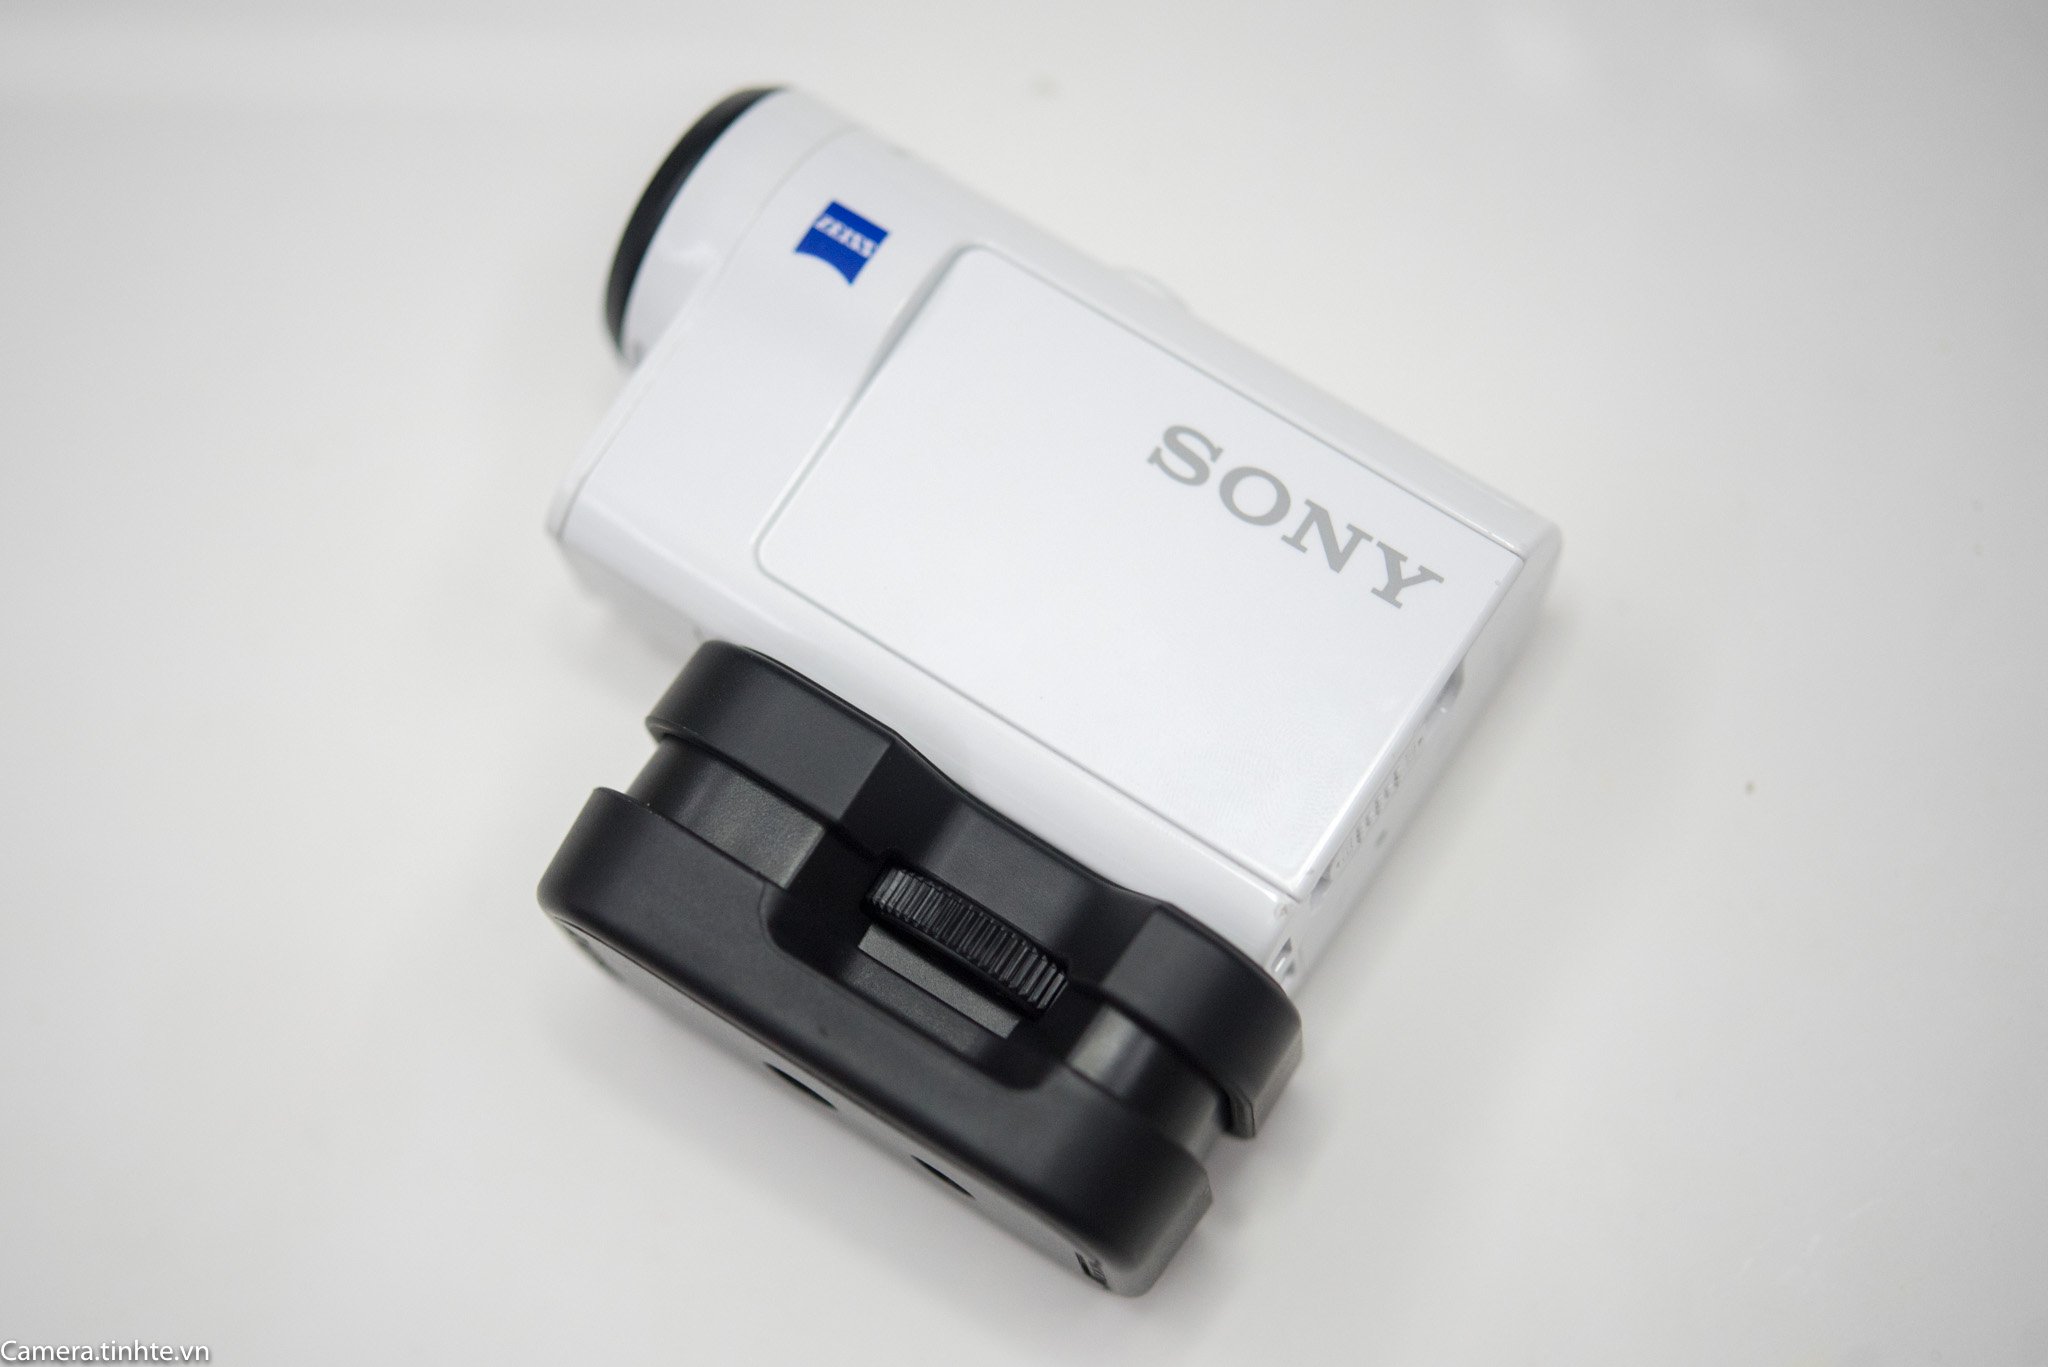 Đang tải Phu kien Sony FDR-X3000 - Camera.tinhte.vn -12.jpg…